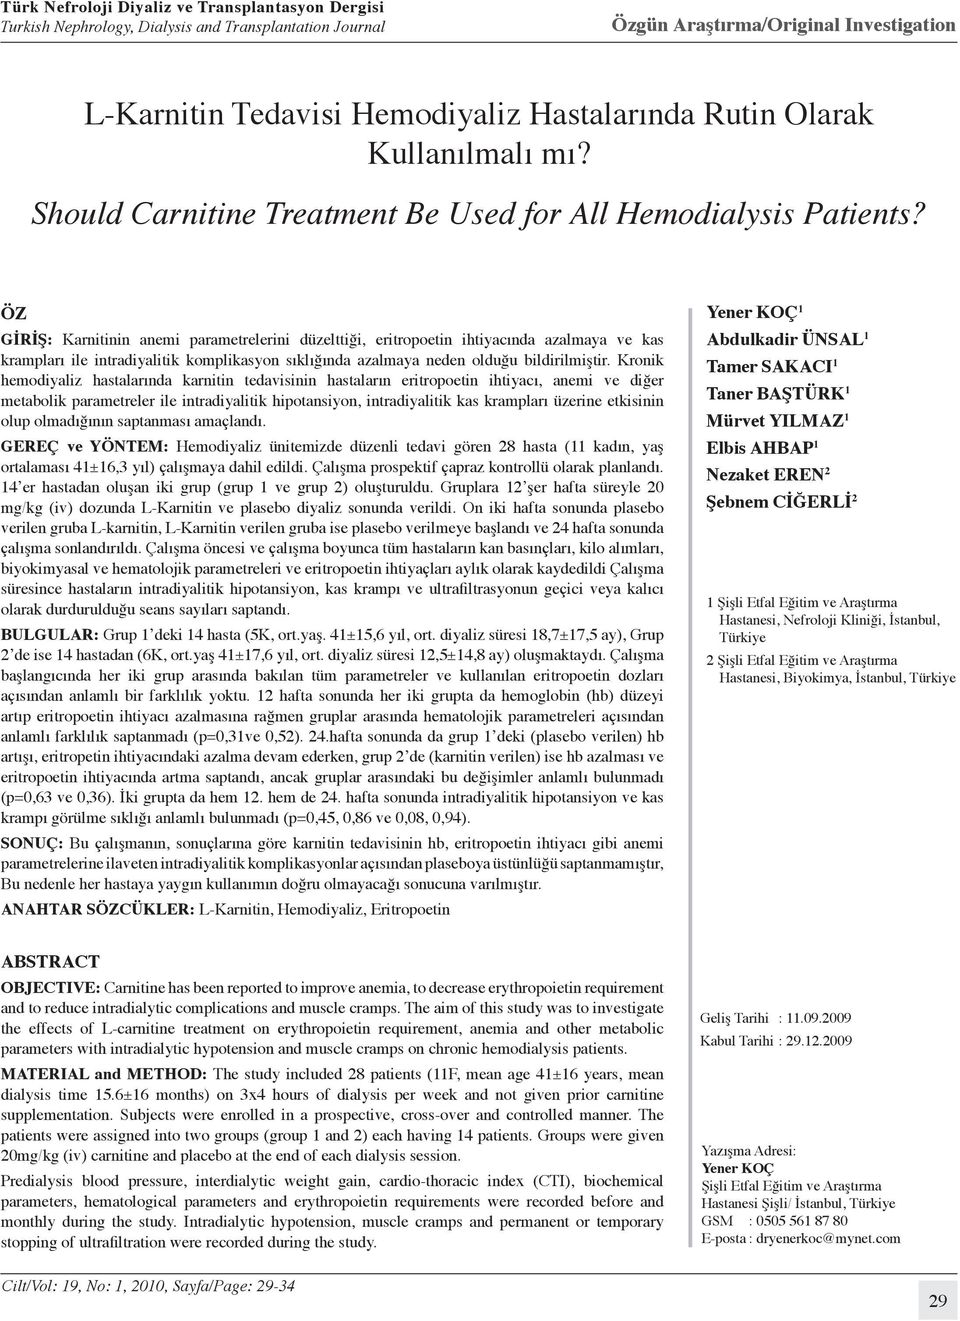 Kronik hemodiyaliz hastalarında karnitin tedavisinin hastaların eritropoetin ihtiyacı, anemi ve diğer metabolik parametreler ile intradiyalitik hipotansiyon, intradiyalitik kas krampları üzerine